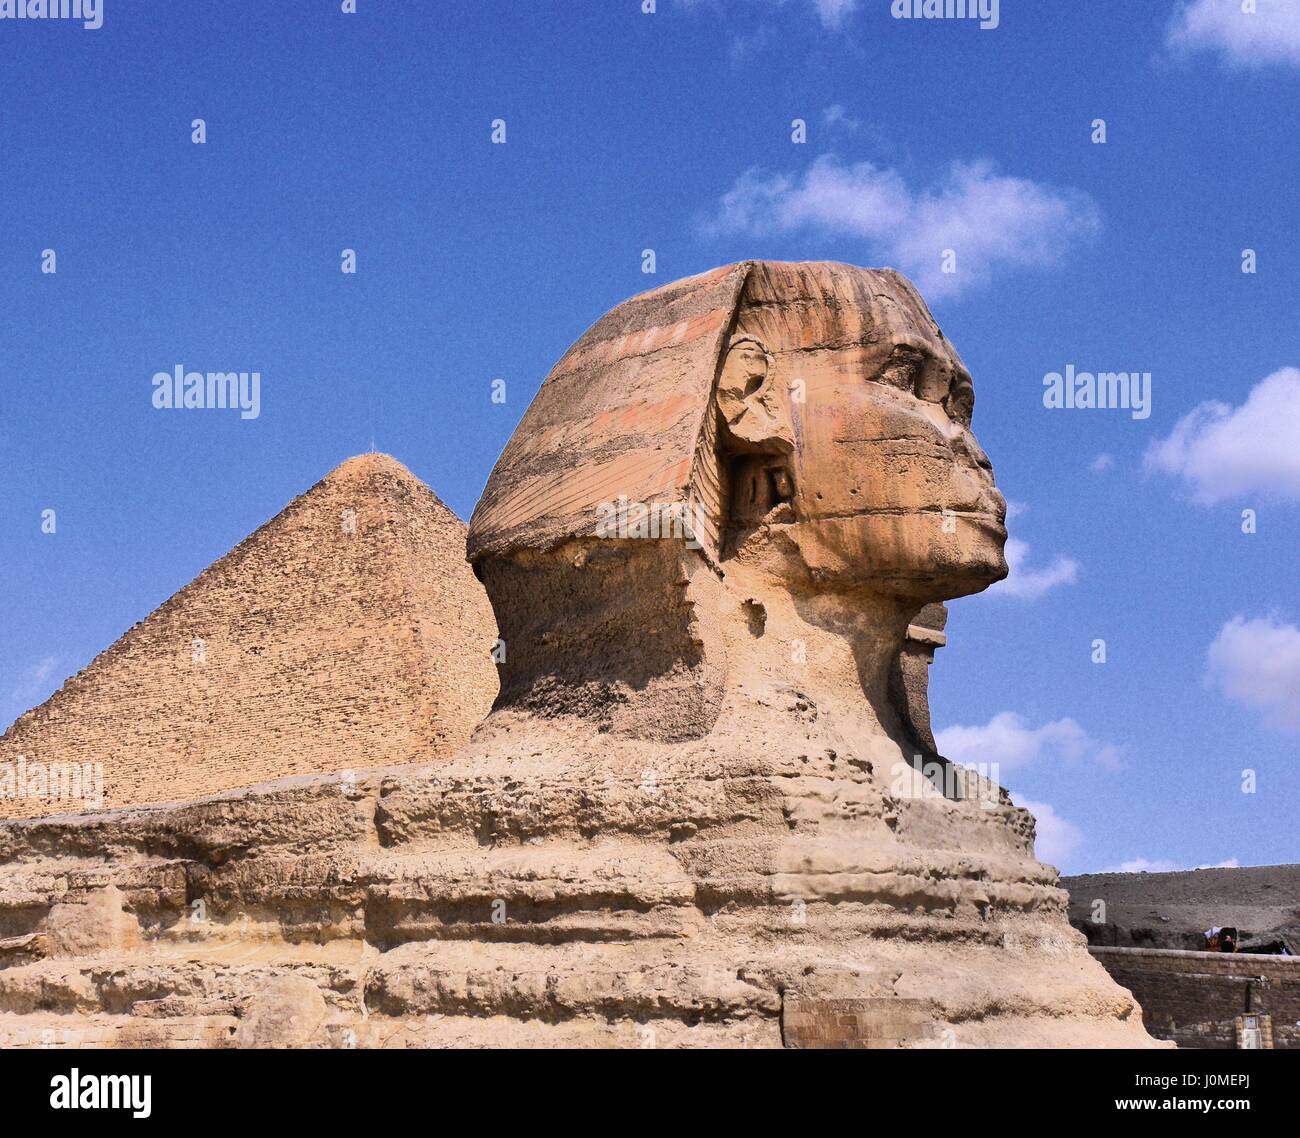 Vista de perfil de la Gran Esfinge de Giza con uno de las pirámides por detrás y un cielo azul y tenues nubes en segundo plano en color de alto contraste dinámico Foto de stock